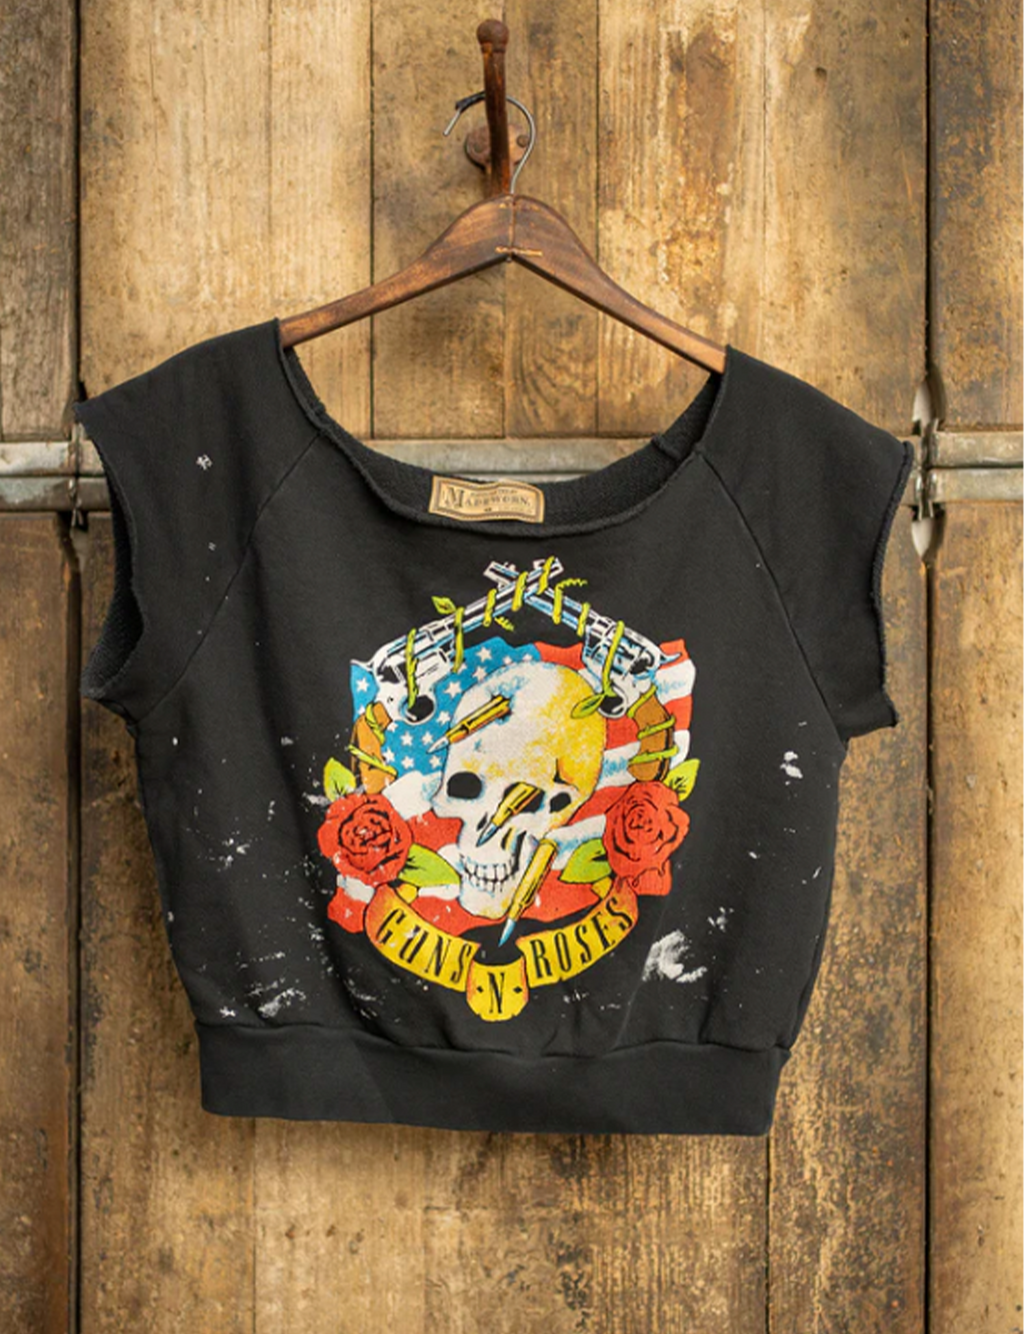 Guns N Roses Cut Sweatshirt, Coal